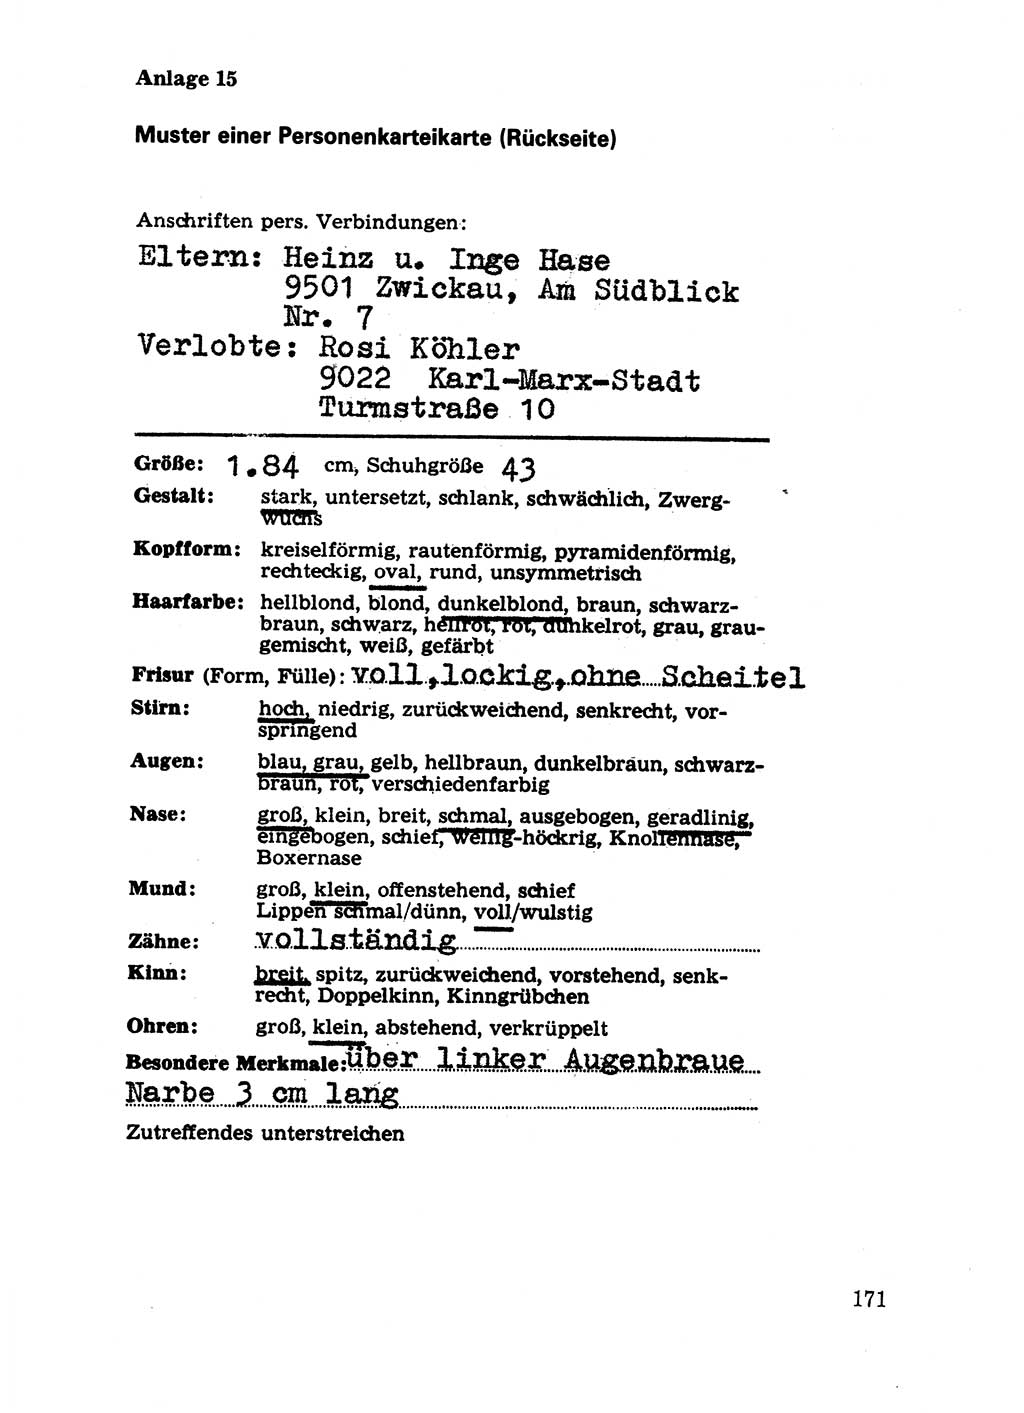 Handbuch für operative Dienste, Abteilung Strafvollzug (SV) [Ministerium des Innern (MdI) Deutsche Demokratische Republik (DDR)] 1981, Seite 171 (Hb. op. D. Abt. SV MdI DDR 1981, S. 171)